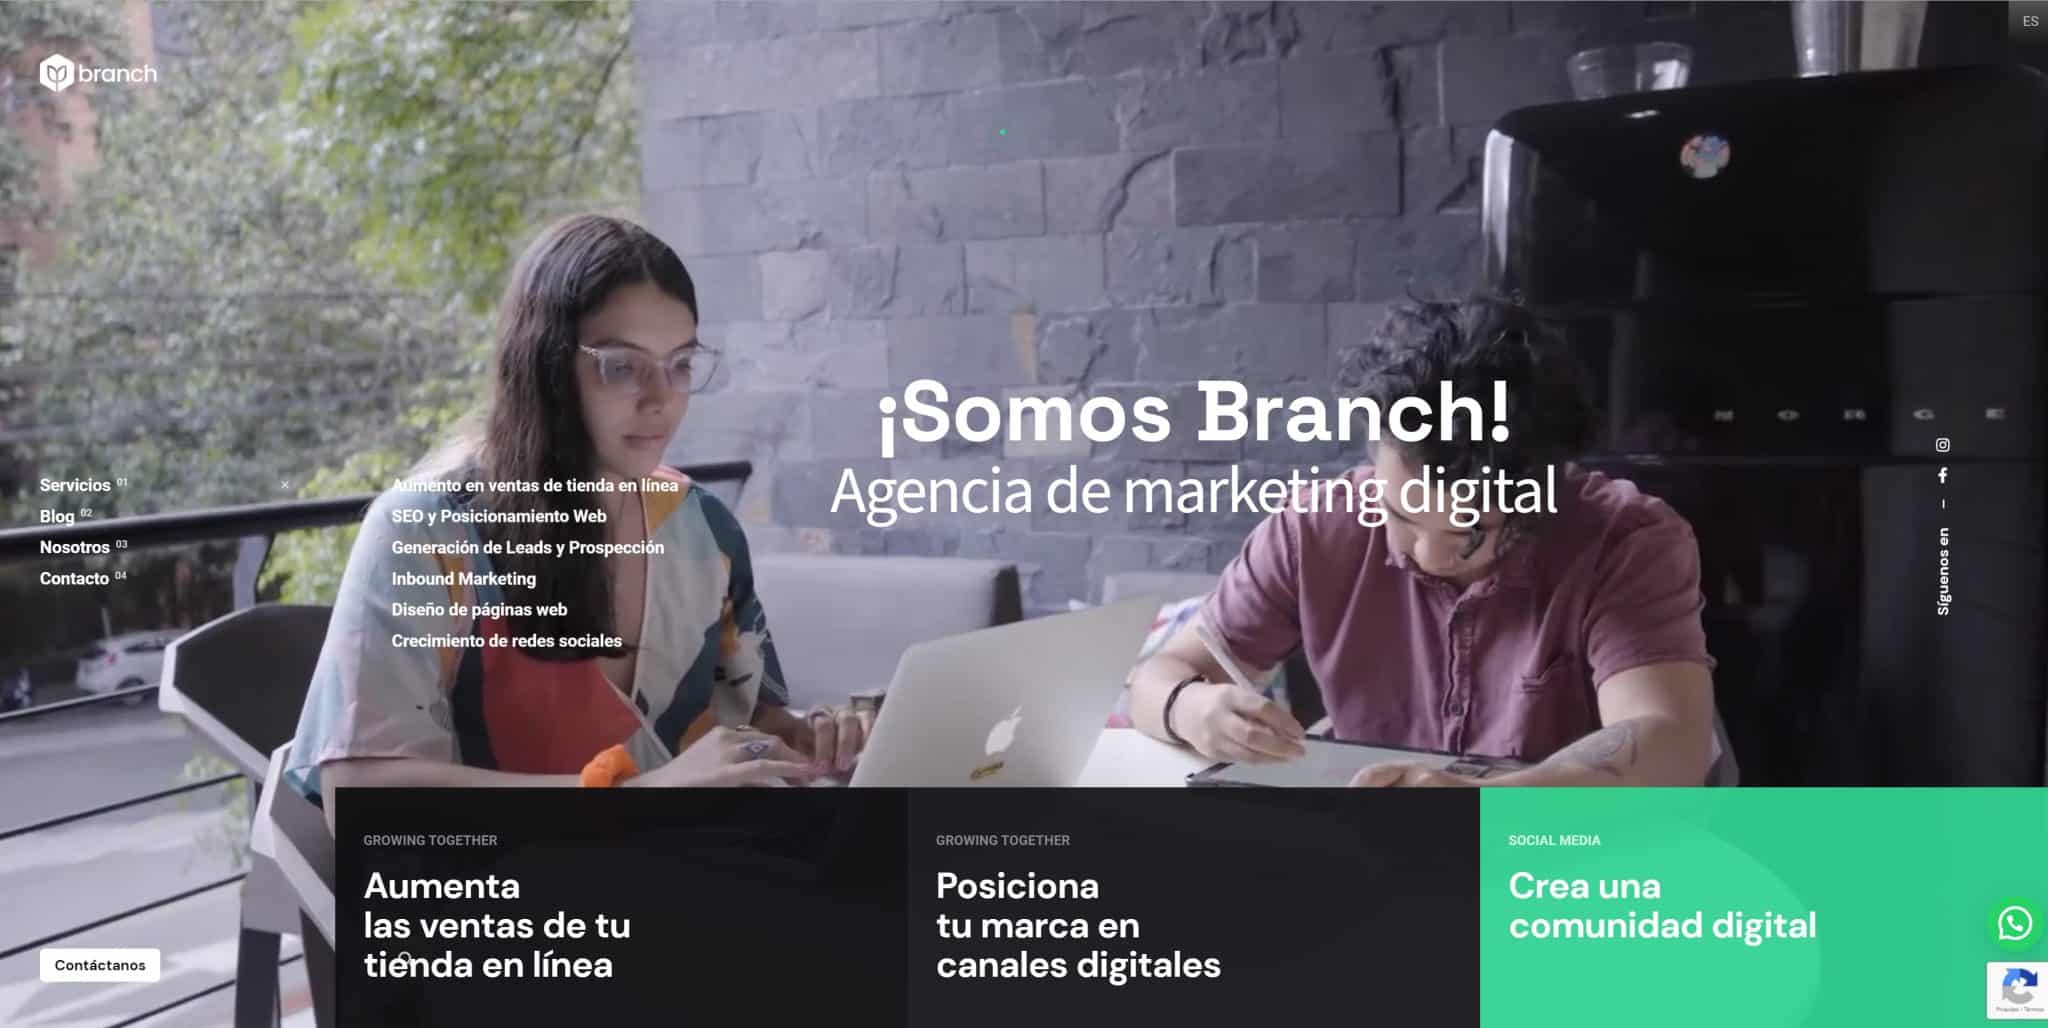 agencia de marketing digital en lima, panama y bogota colombia, agencia de marketing digital en Medellin, agencia de marketing digital en bogota